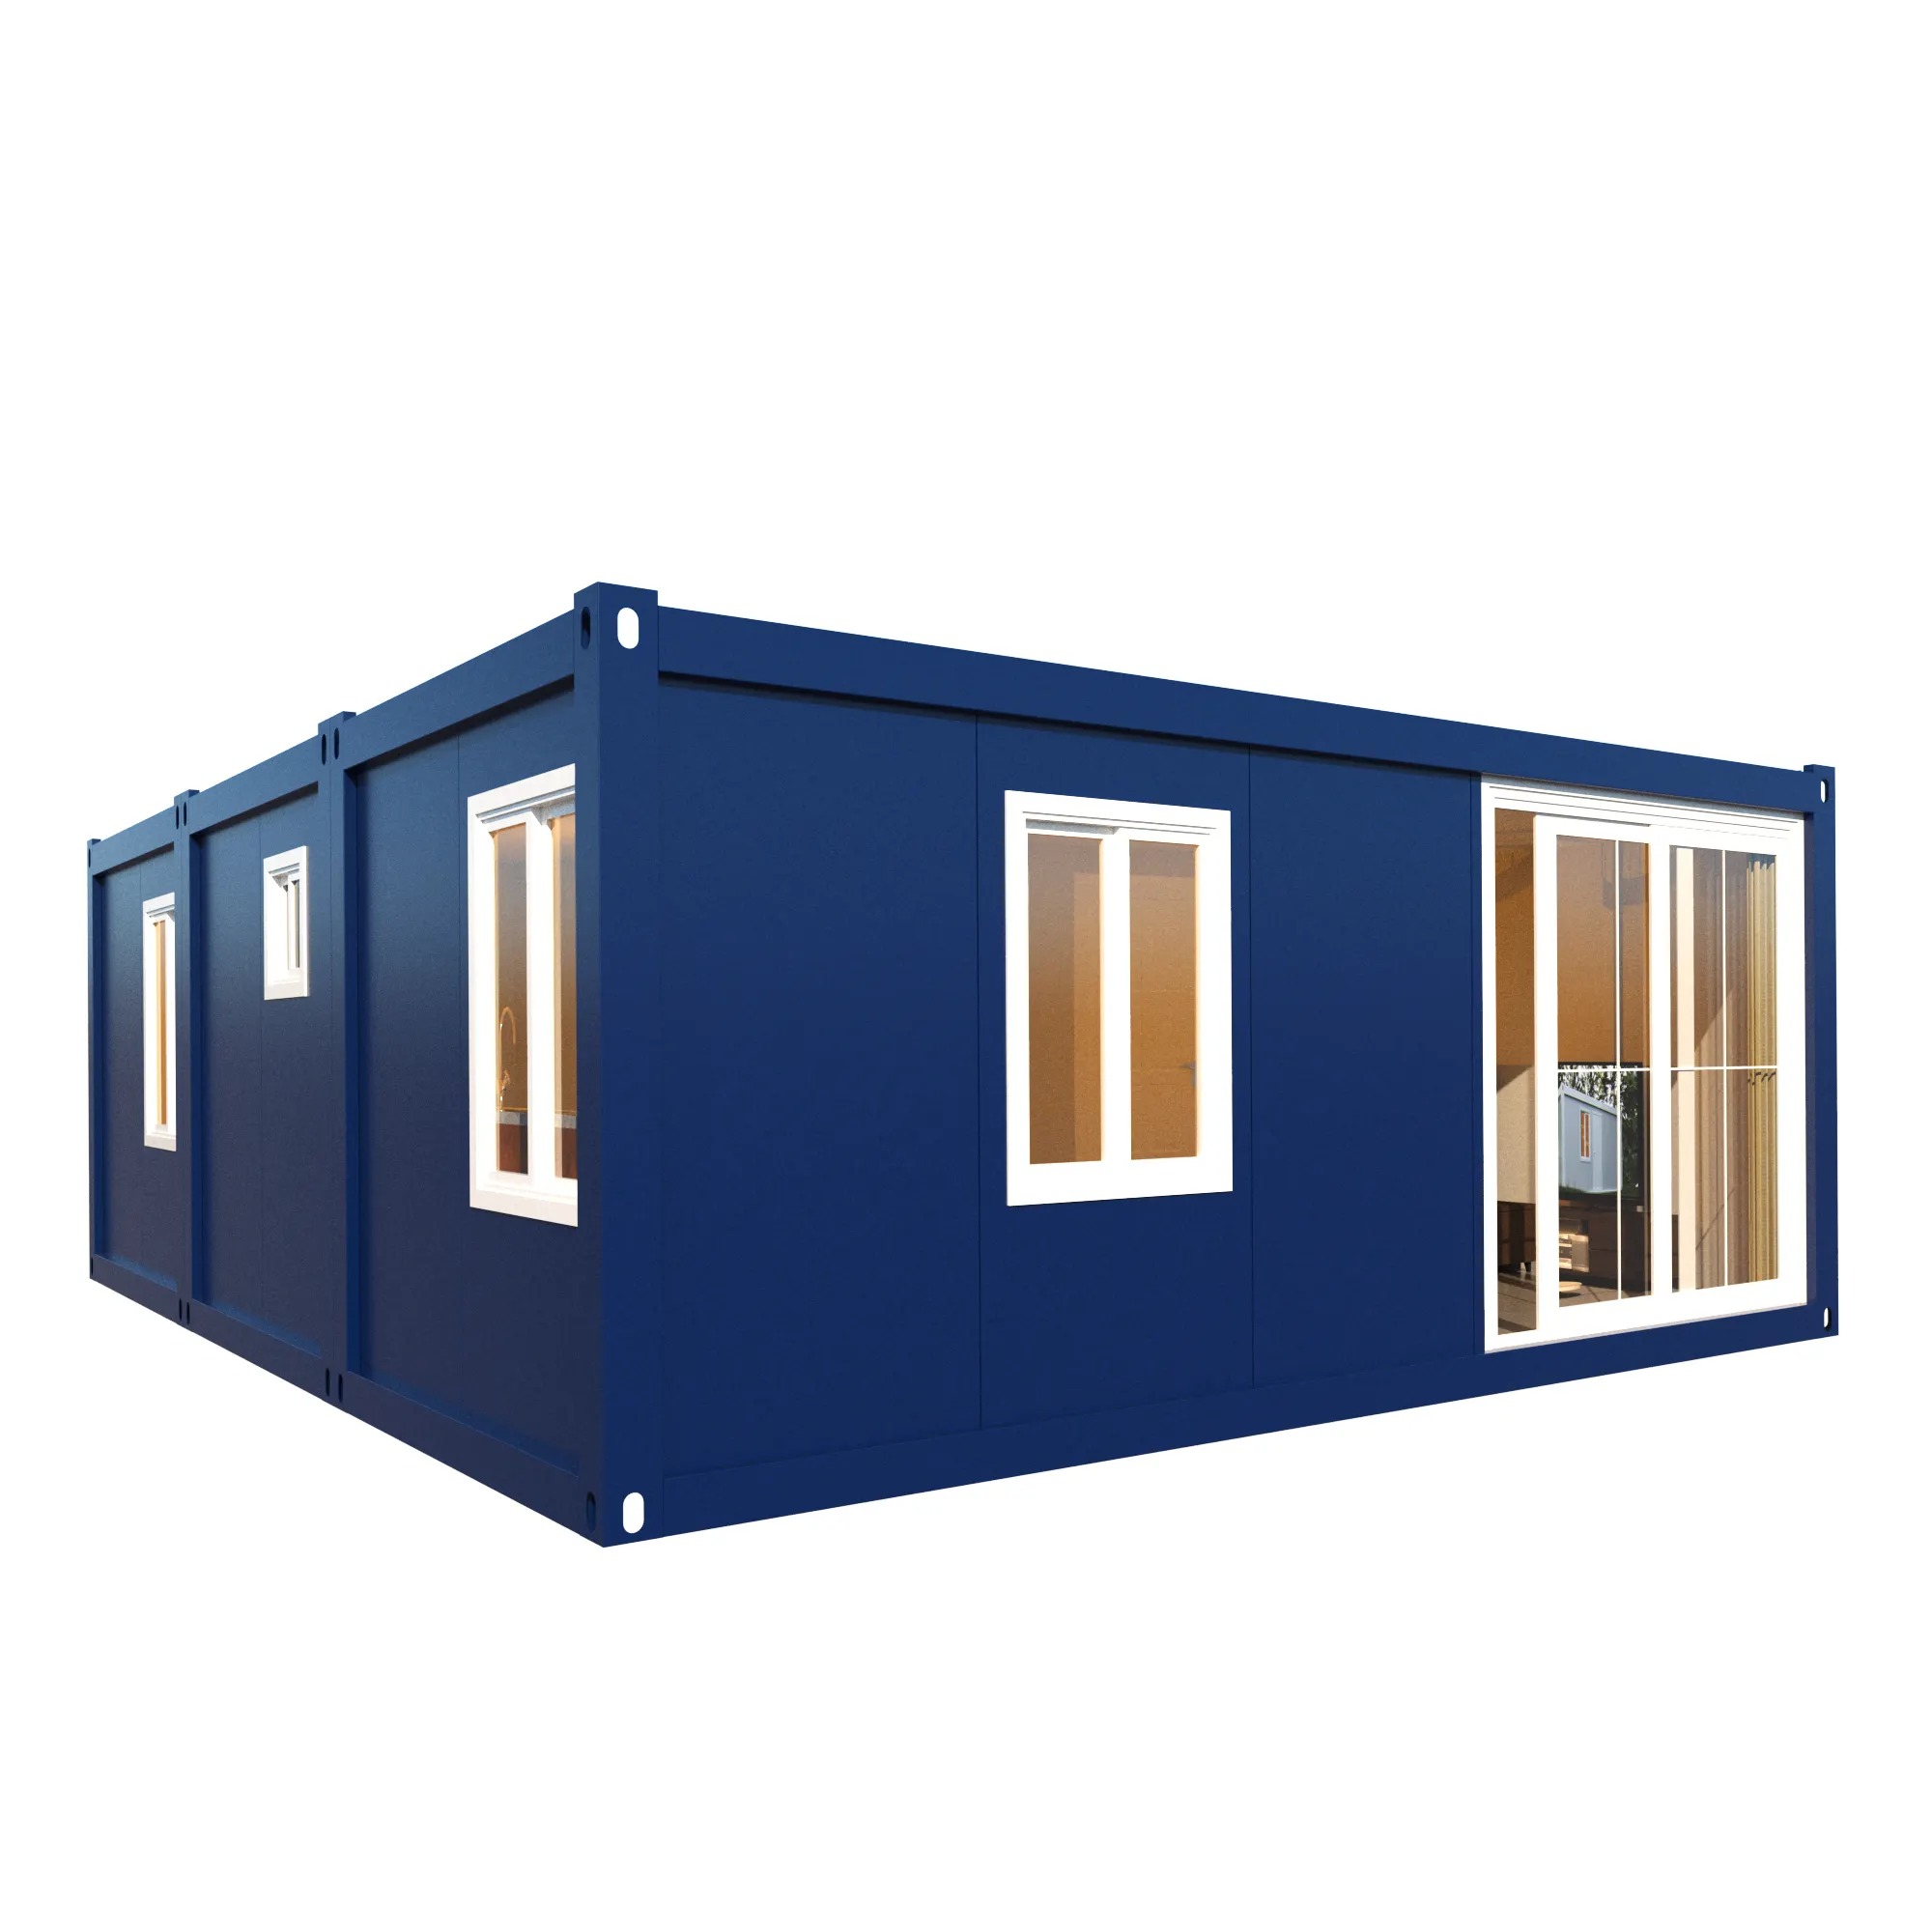 Le conteneur solaire fabriqué combiné mobile abrite une petite maison de luxe de 40 pieds préfabriquée